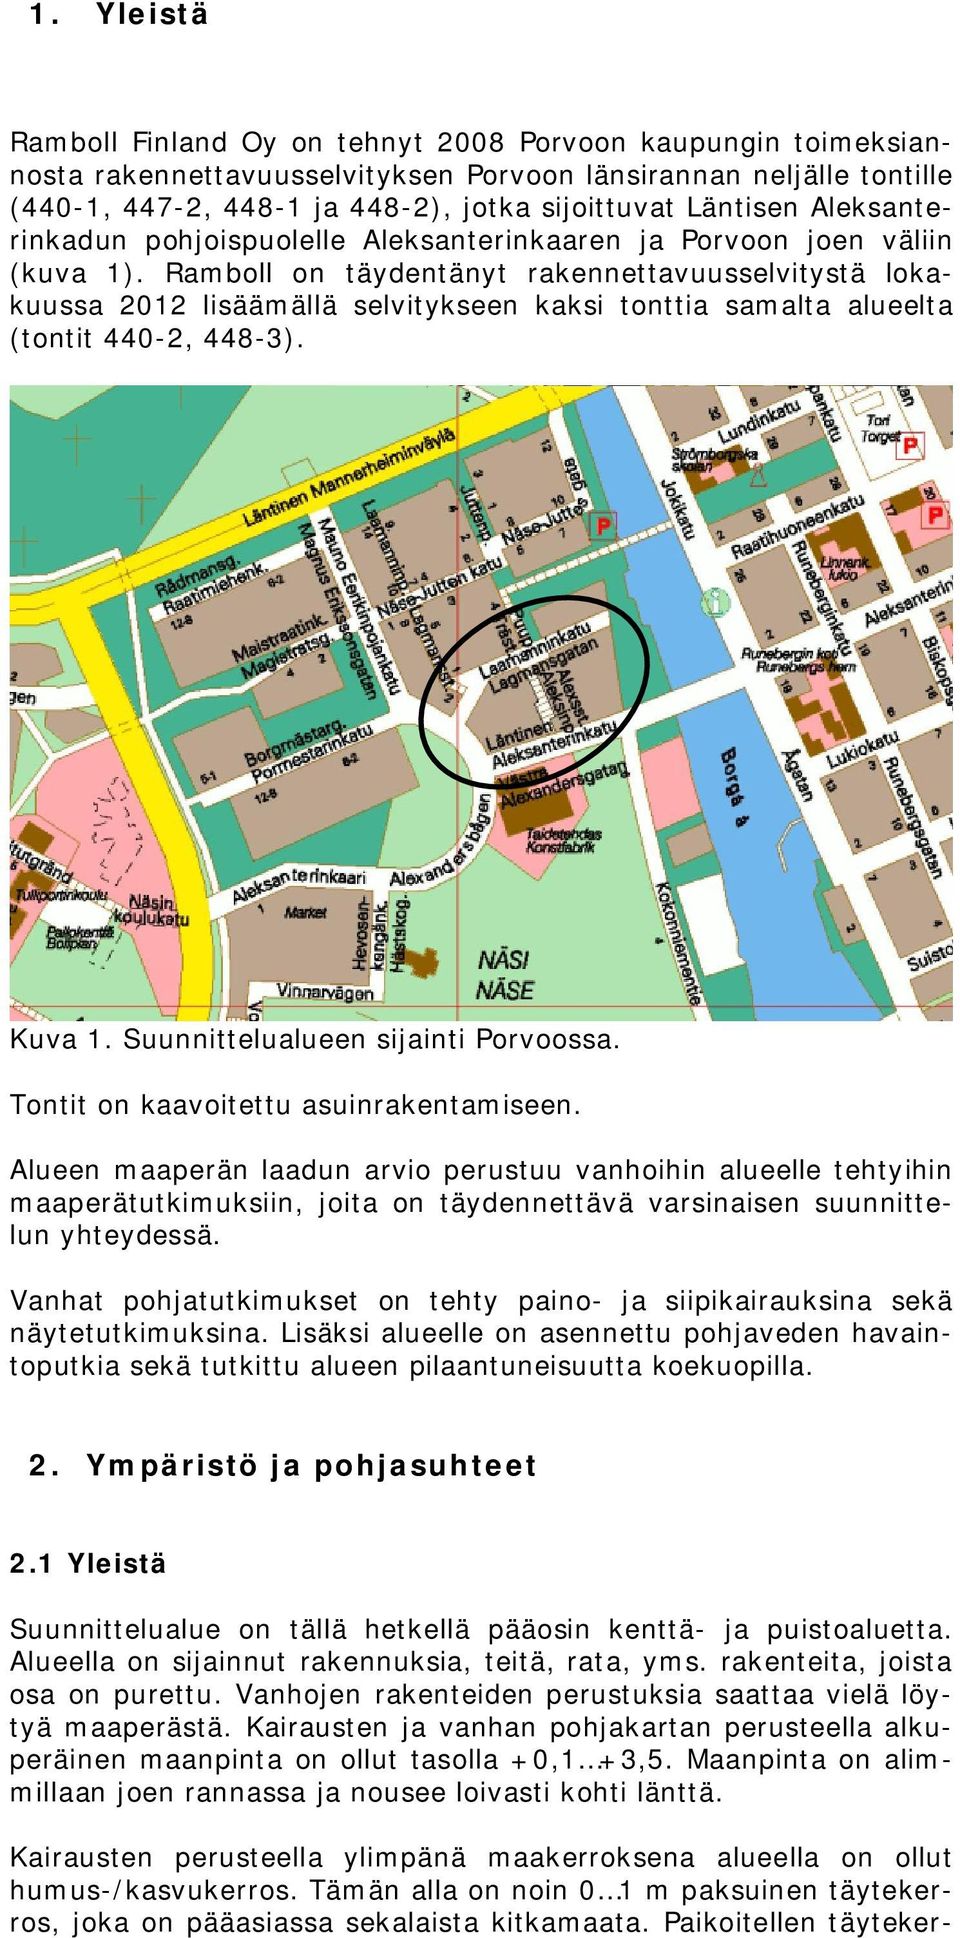 Ramboll on täydentänyt rakennettavuusselvitystä lokakuussa 2012 lisäämällä selvitykseen kaksi tonttia samalta alueelta (tontit 440-2, 448-3). Kuva 1. Suunnittelualueen sijainti Porvoossa.